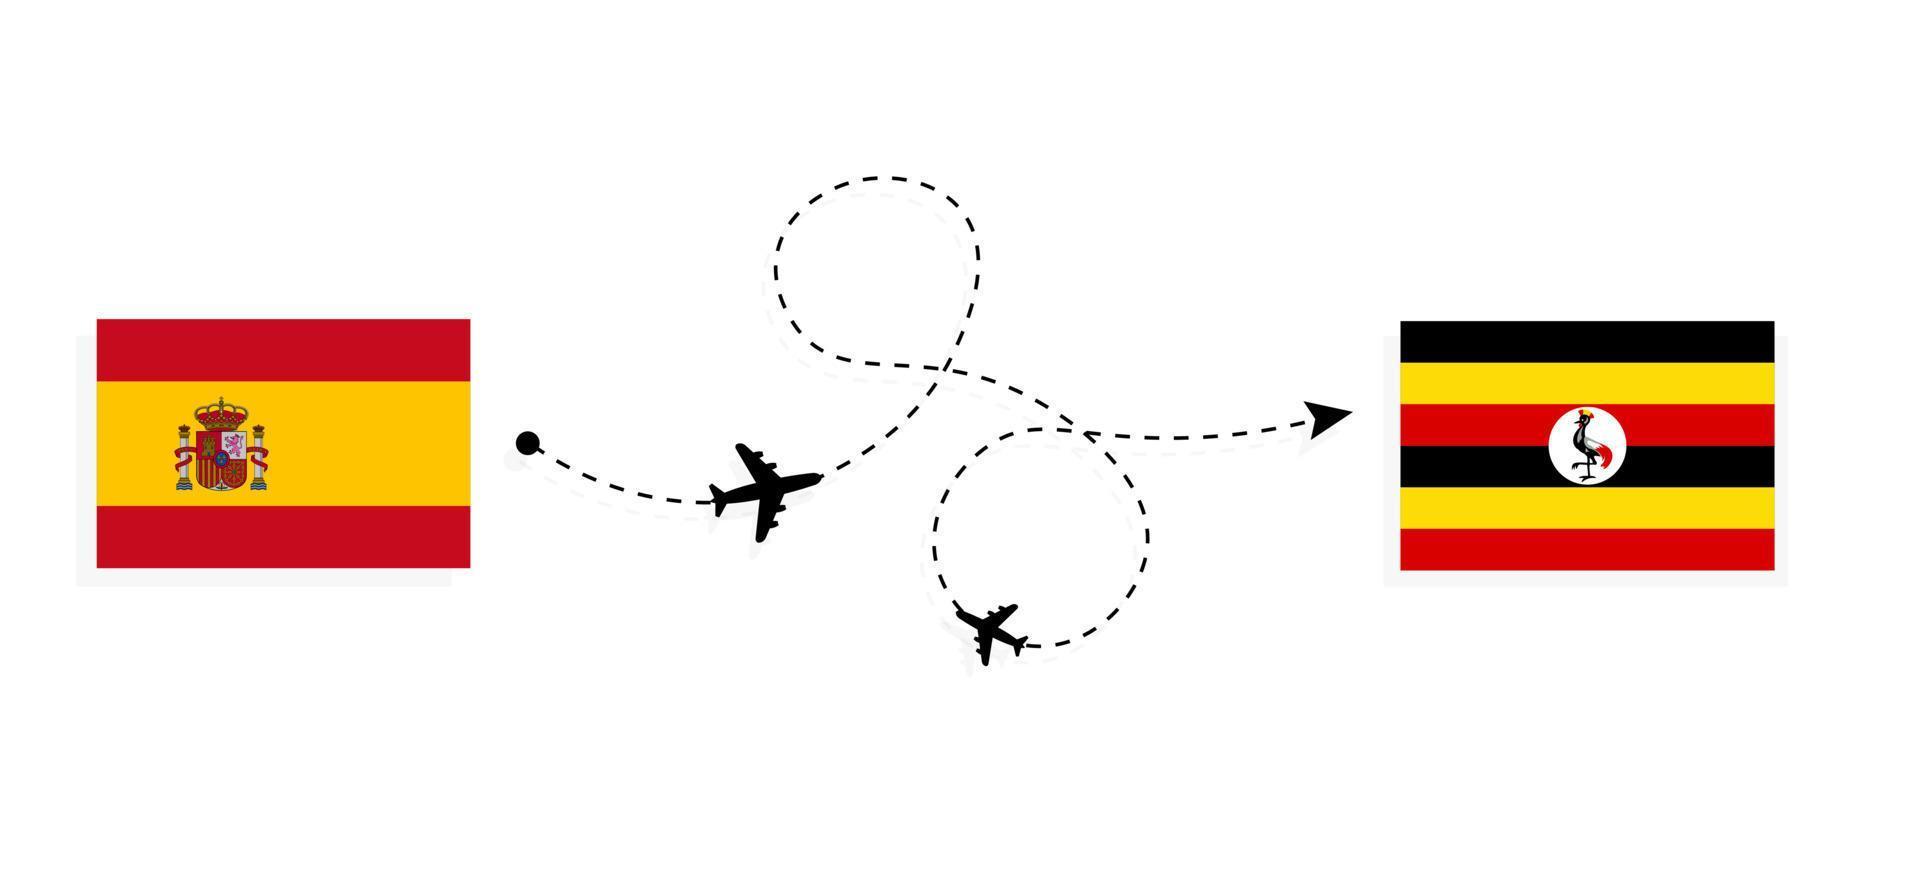 vlucht en reis van spanje naar oeganda per reisconcept voor passagiersvliegtuigen vector